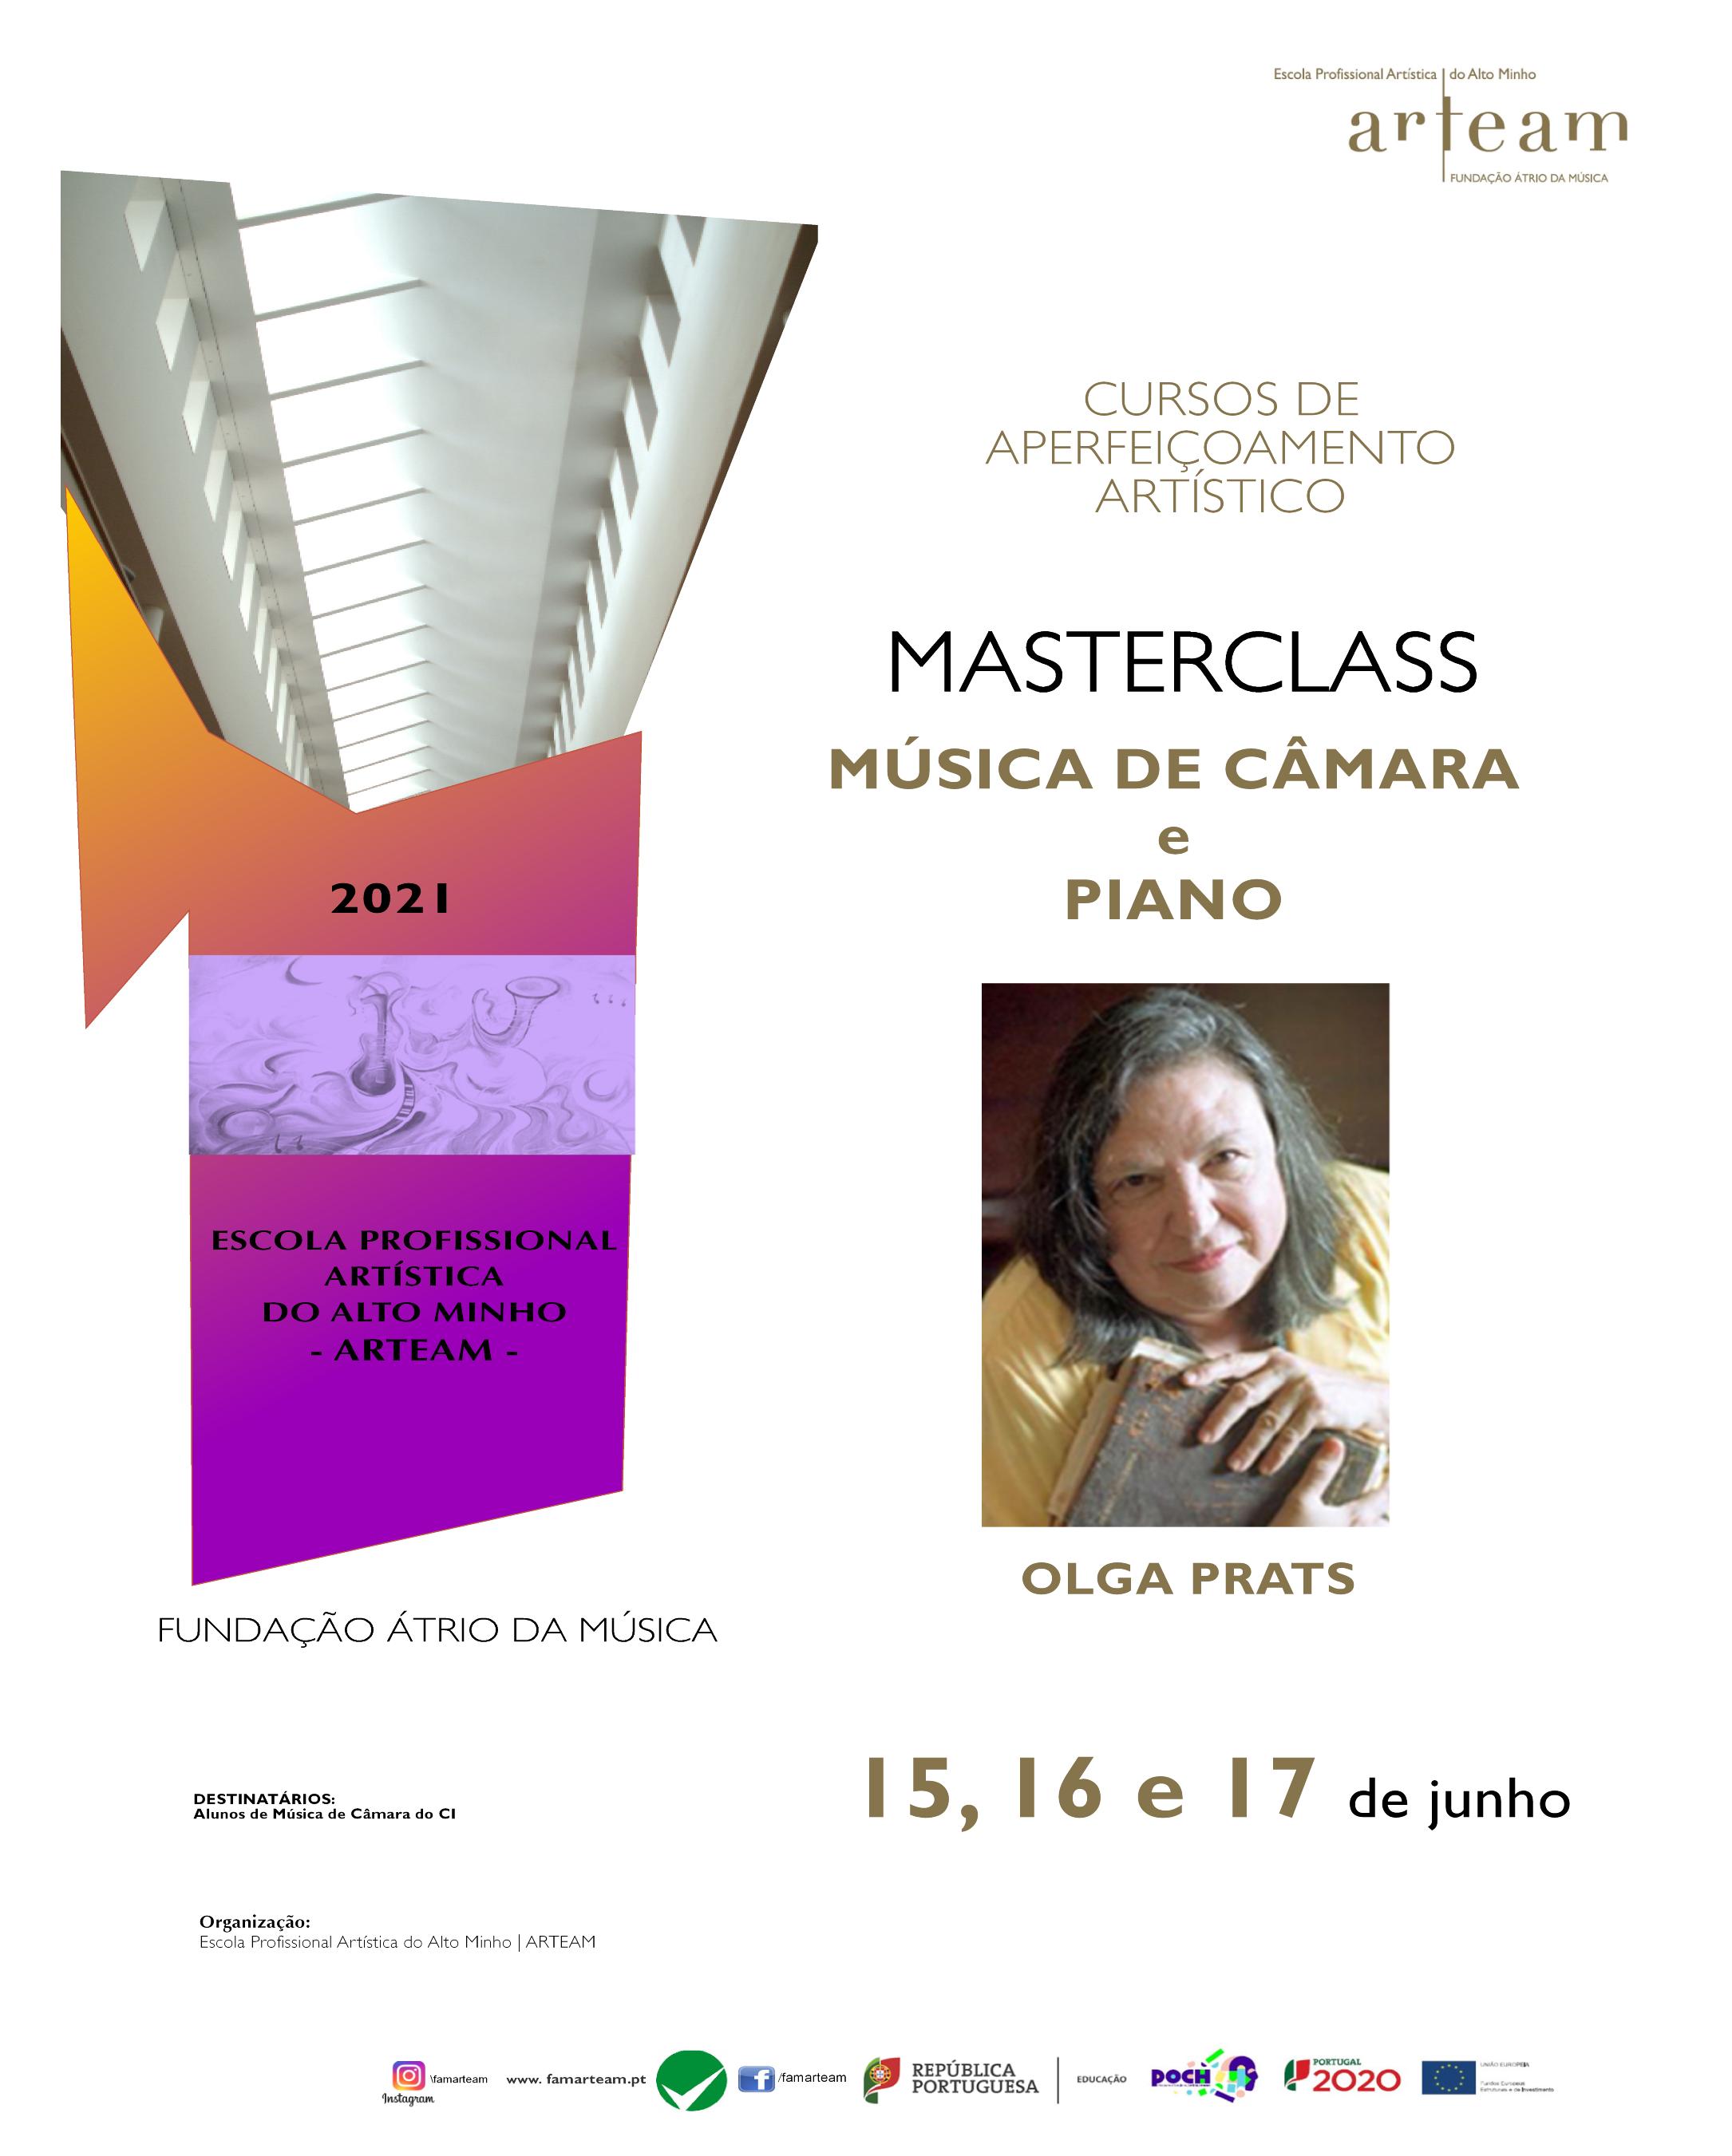 Masterclasses de Piano e Música de Câmara por Olga Prats